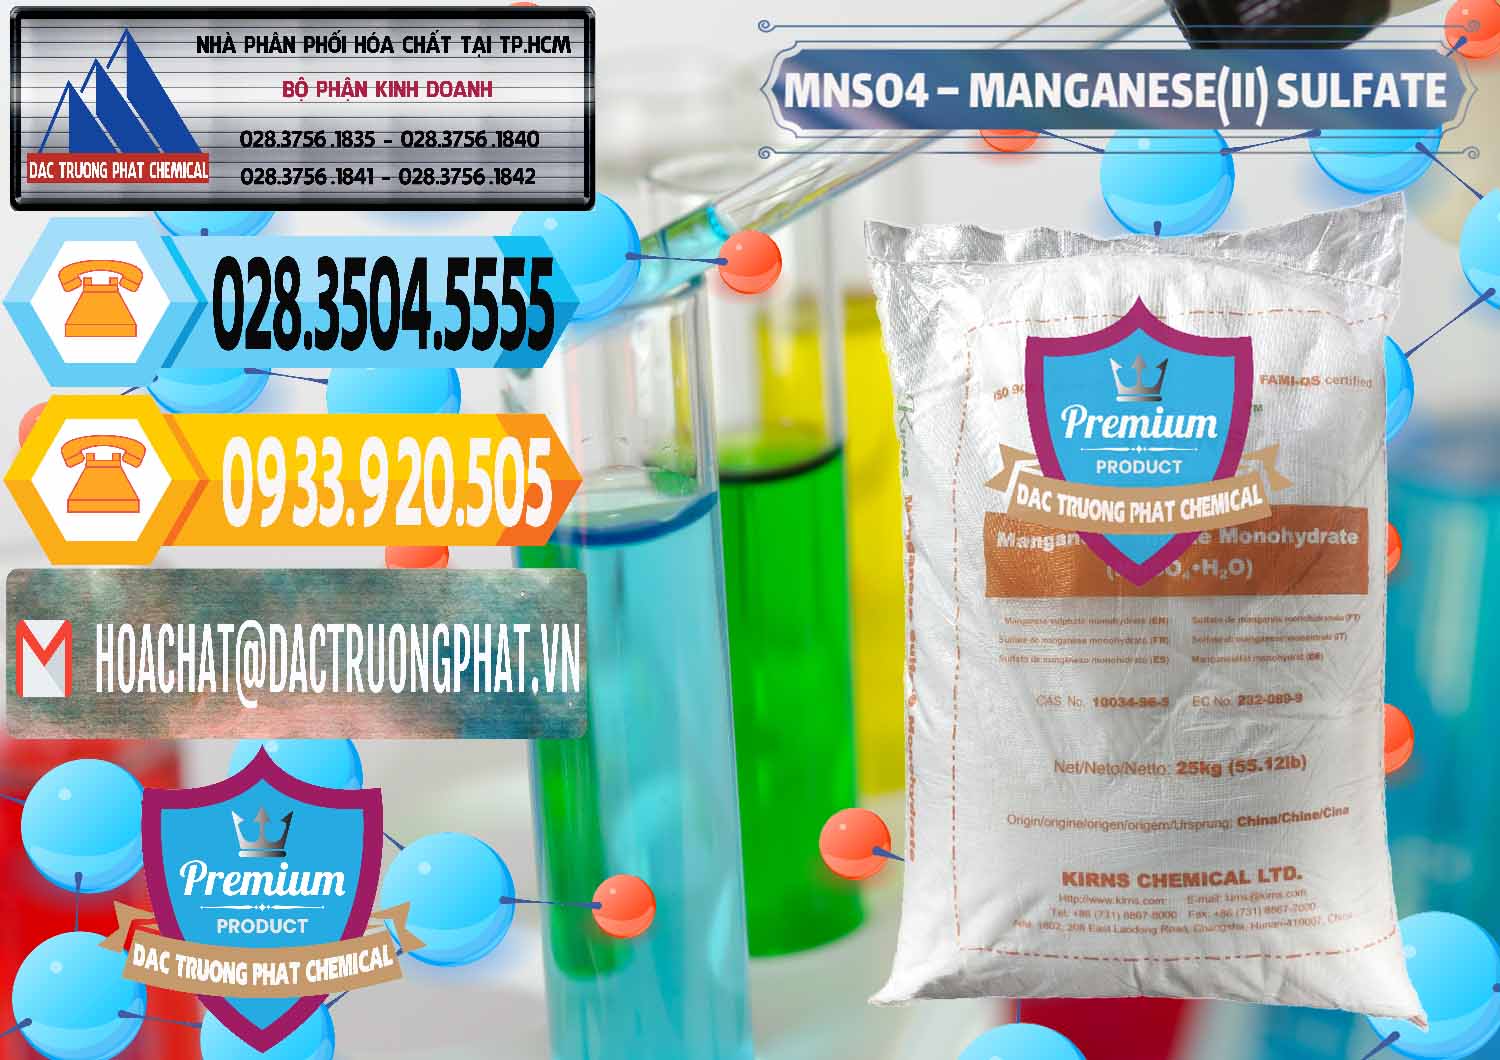 Bán ( cung ứng ) MNSO4 – Manganese (II) Sulfate Kirns Trung Quốc China - 0095 - Cty bán và cung cấp hóa chất tại TP.HCM - hoachattayrua.net